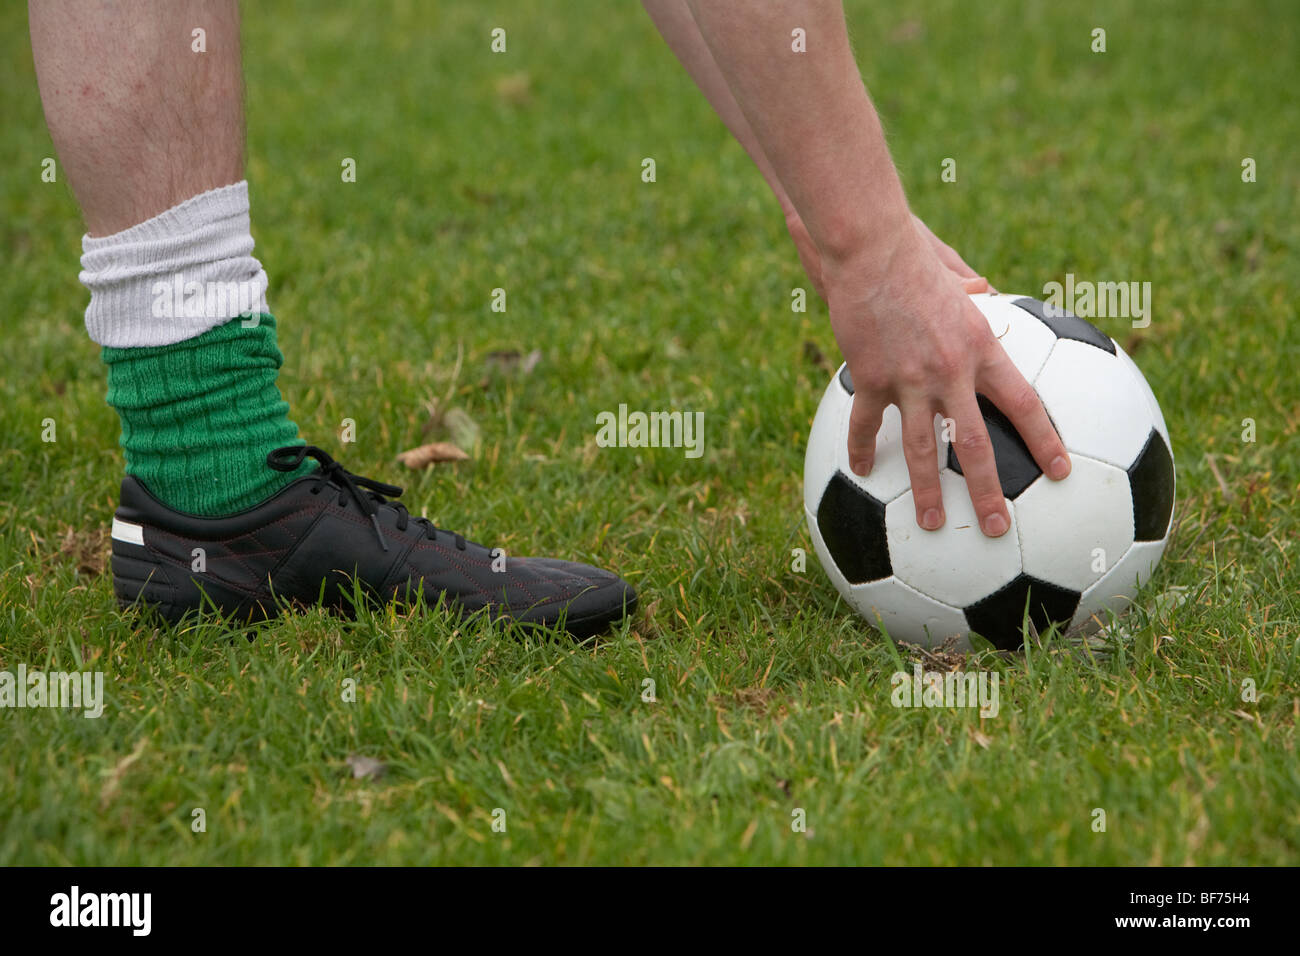 Soccer Football player posizionando la palla giù per un kick Foto Stock